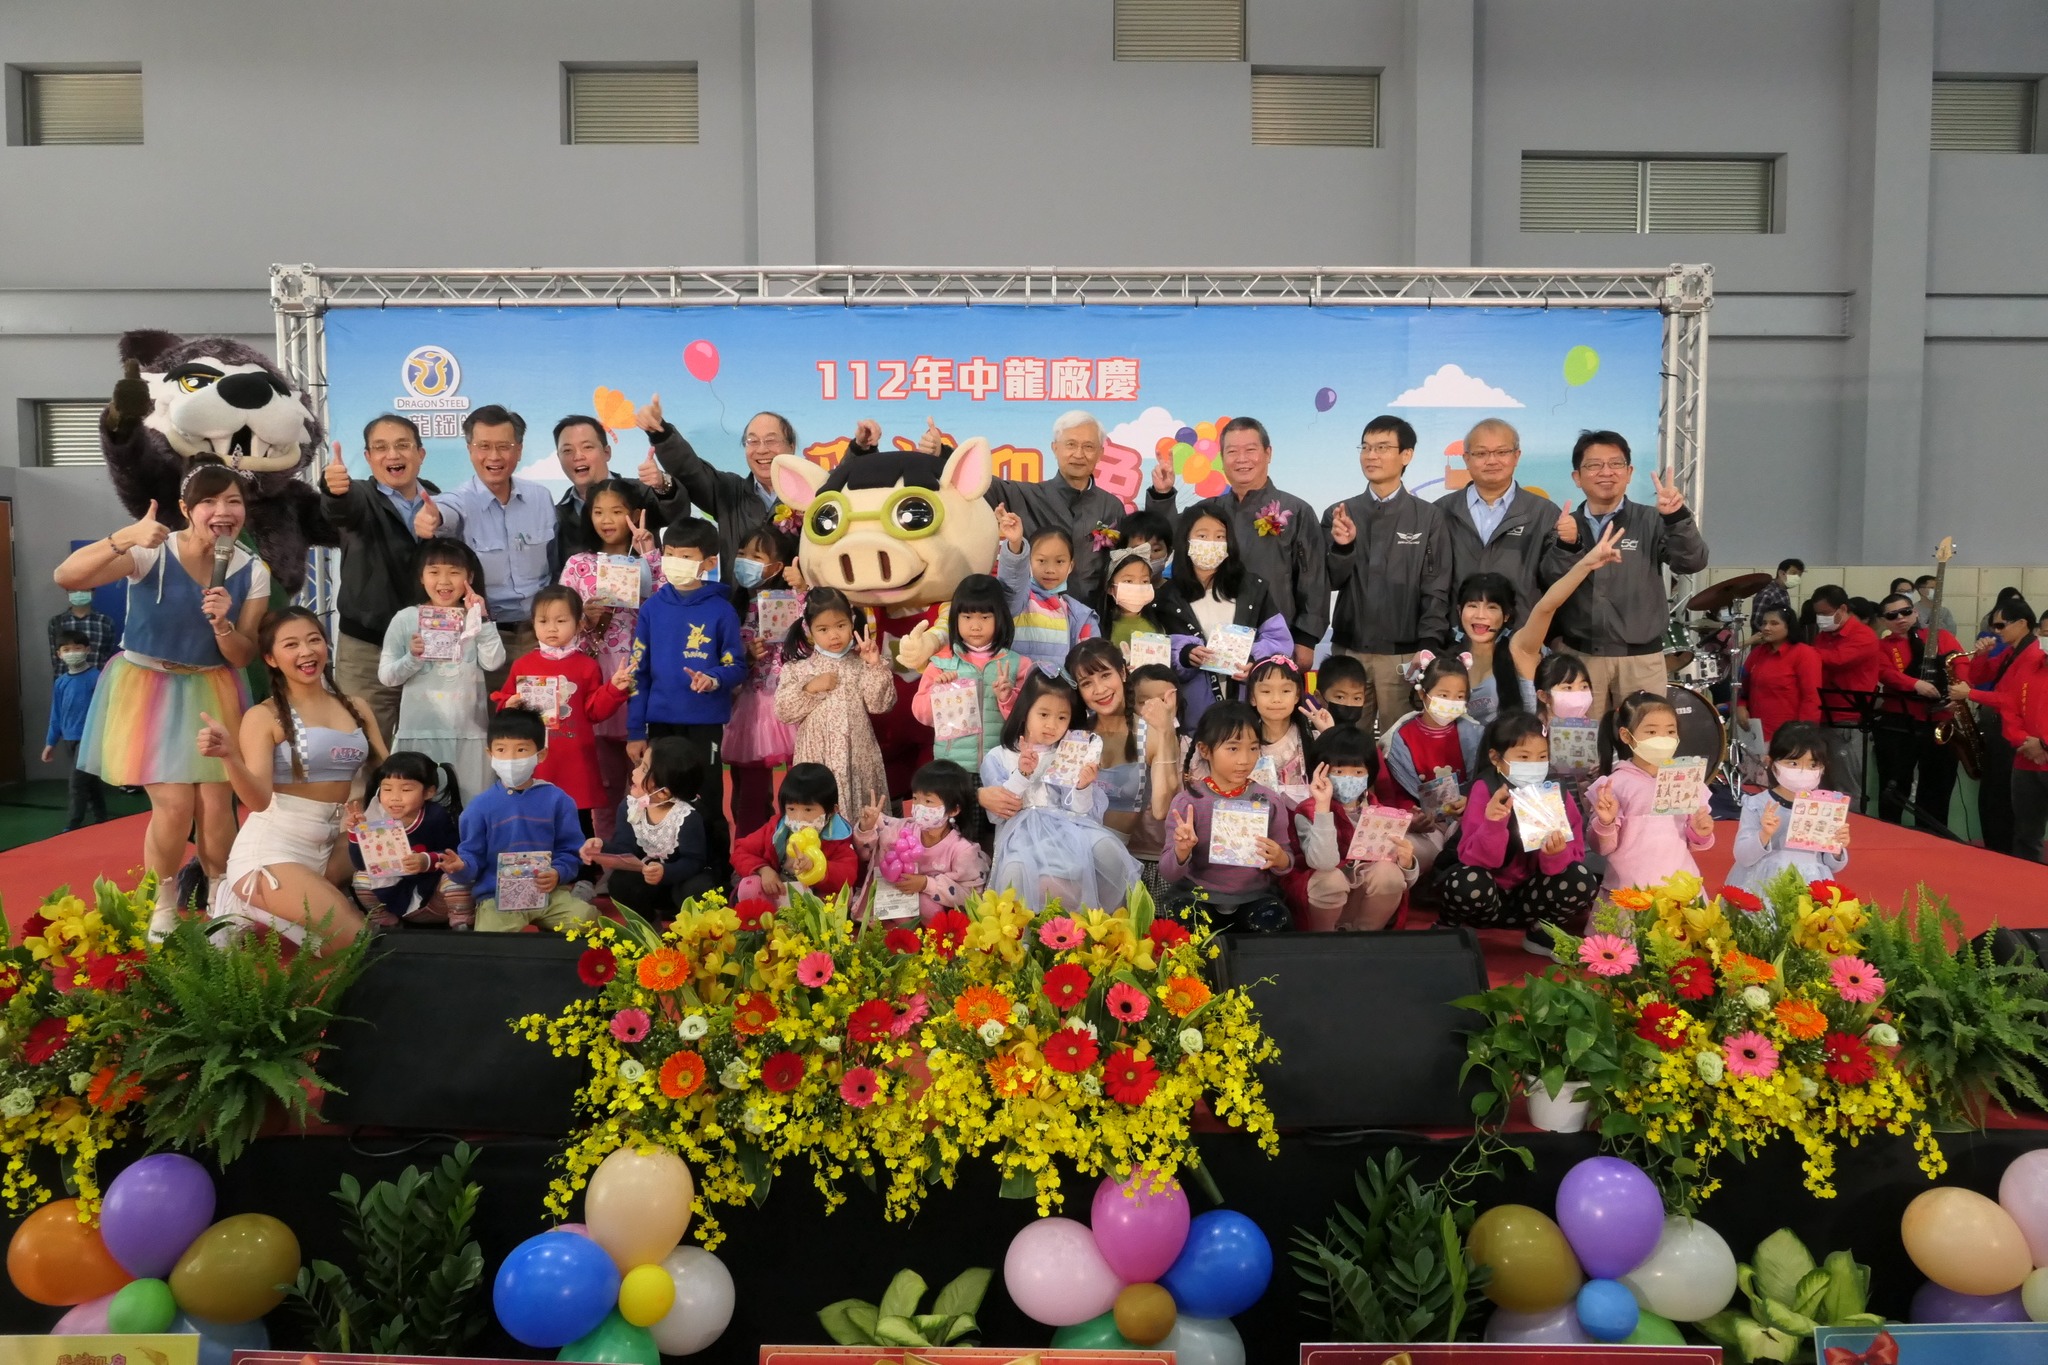 03/04本會理事長受邀參加中龍鋼鐵公司19週年廠慶活動以及親子圖書館啟用儀式。